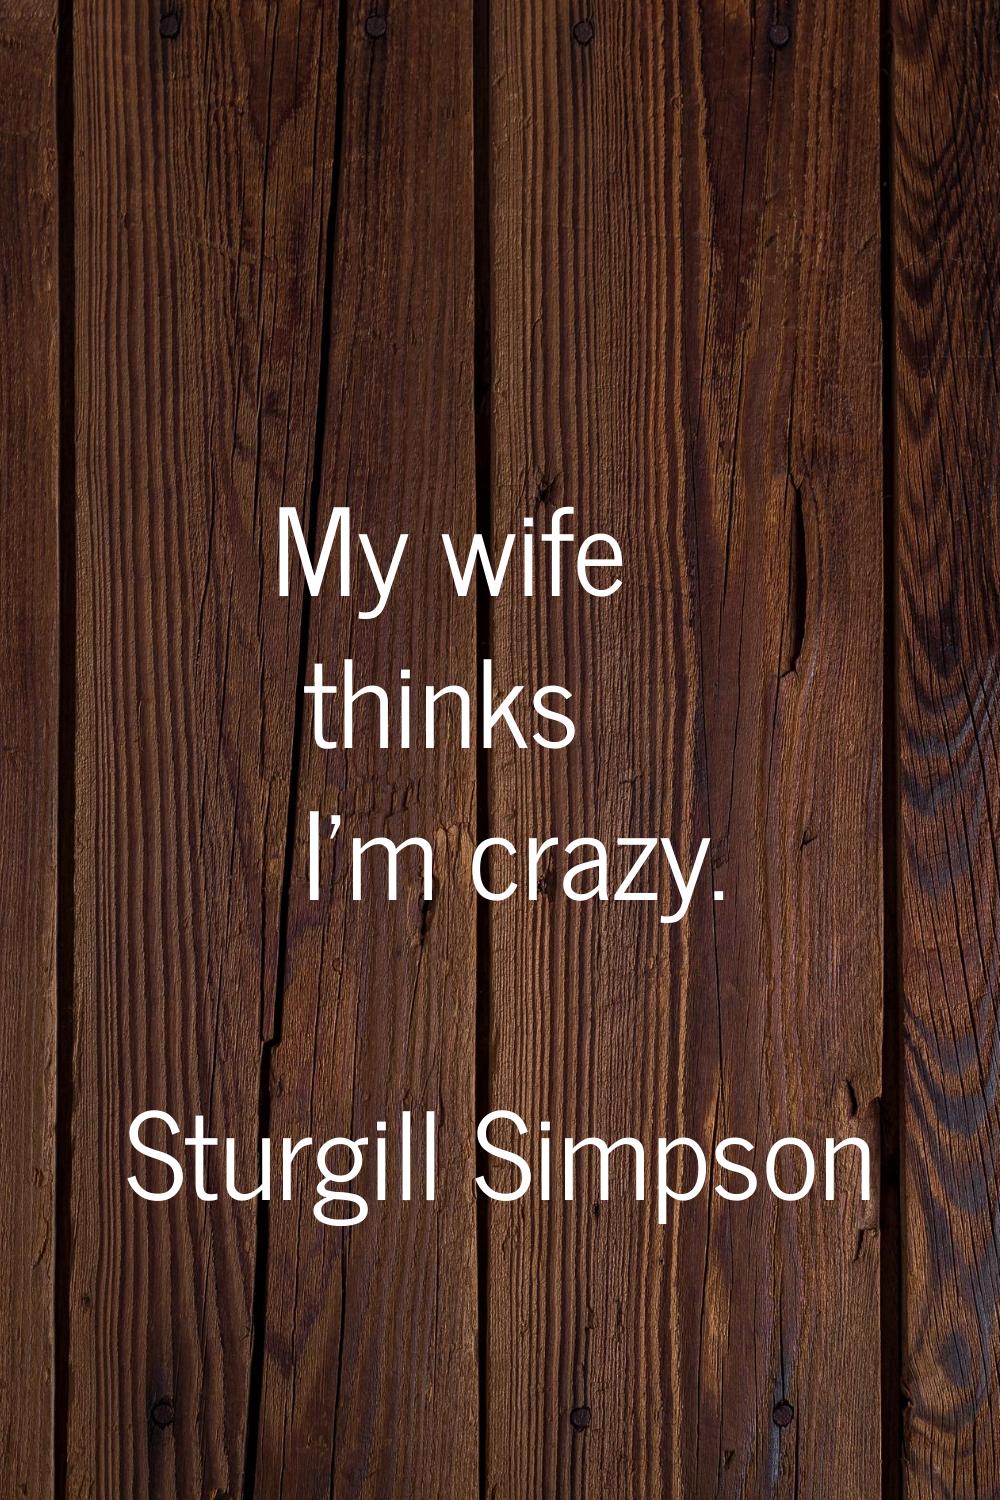 My wife thinks I'm crazy.